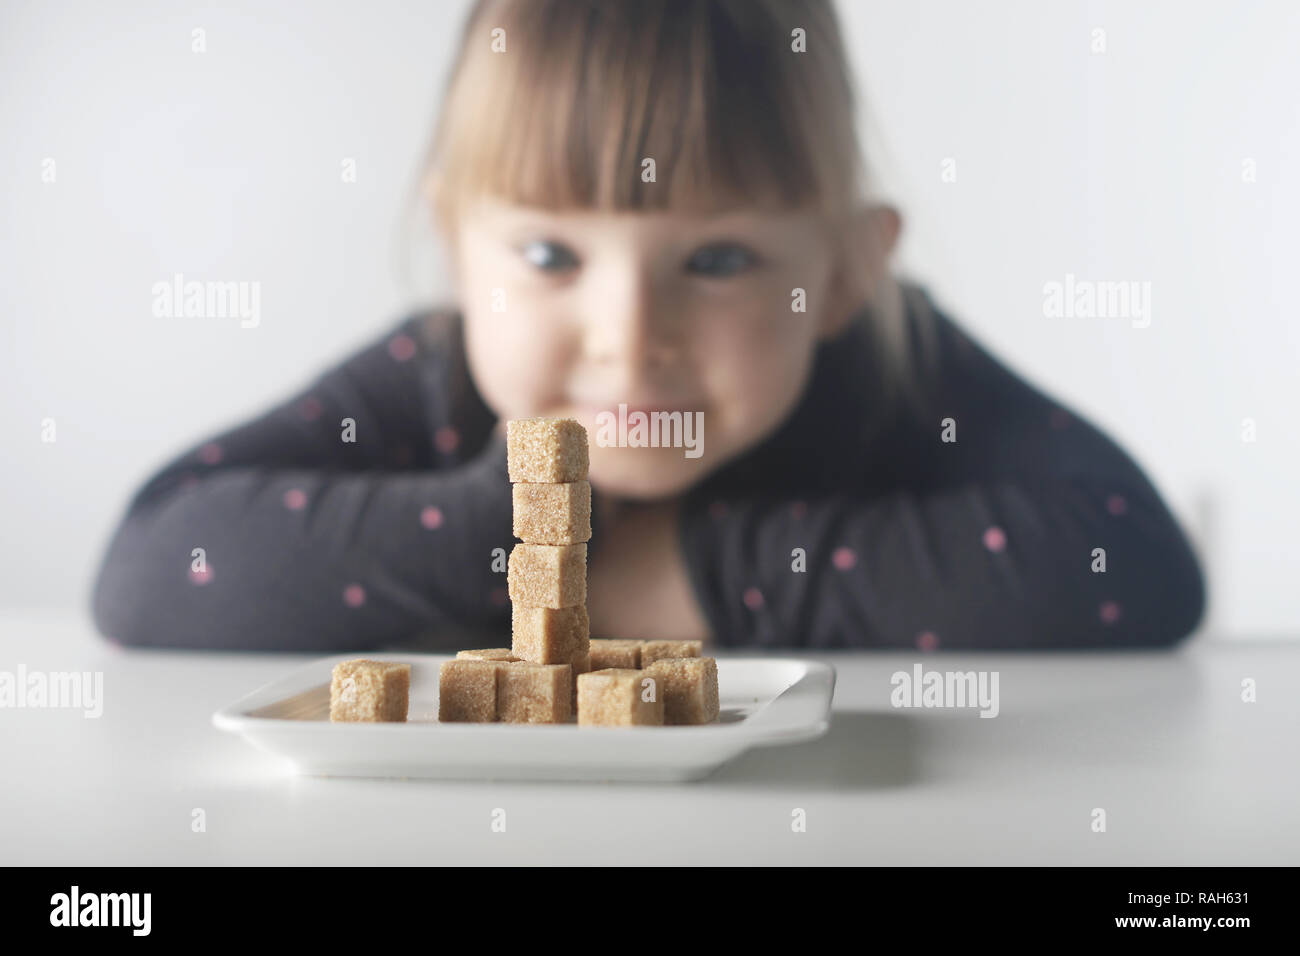 Enfant, cubes de sucre. Le problème de consommation excessive de sucre par les enfants de moins de 10 ans. Banque D'Images